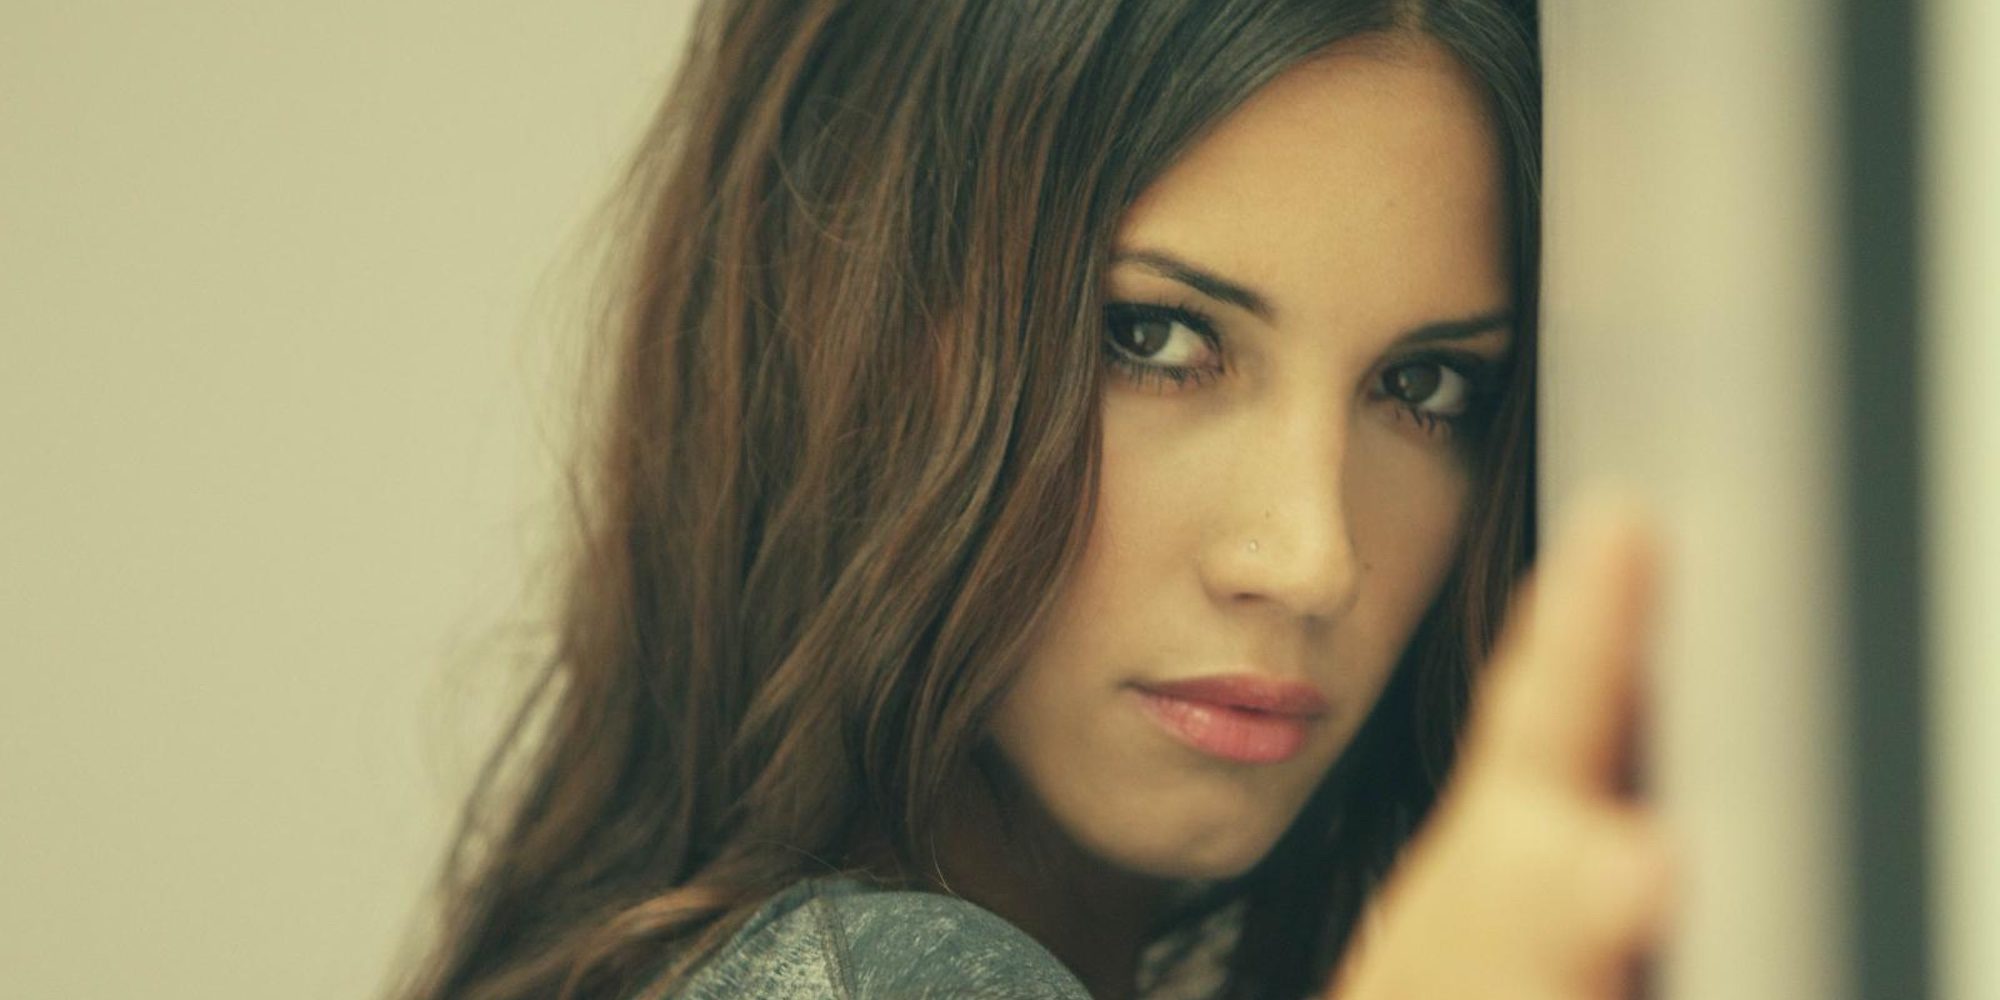 El lado oculto de India Martínez en el videoclip de 'Todo no es casualidad'